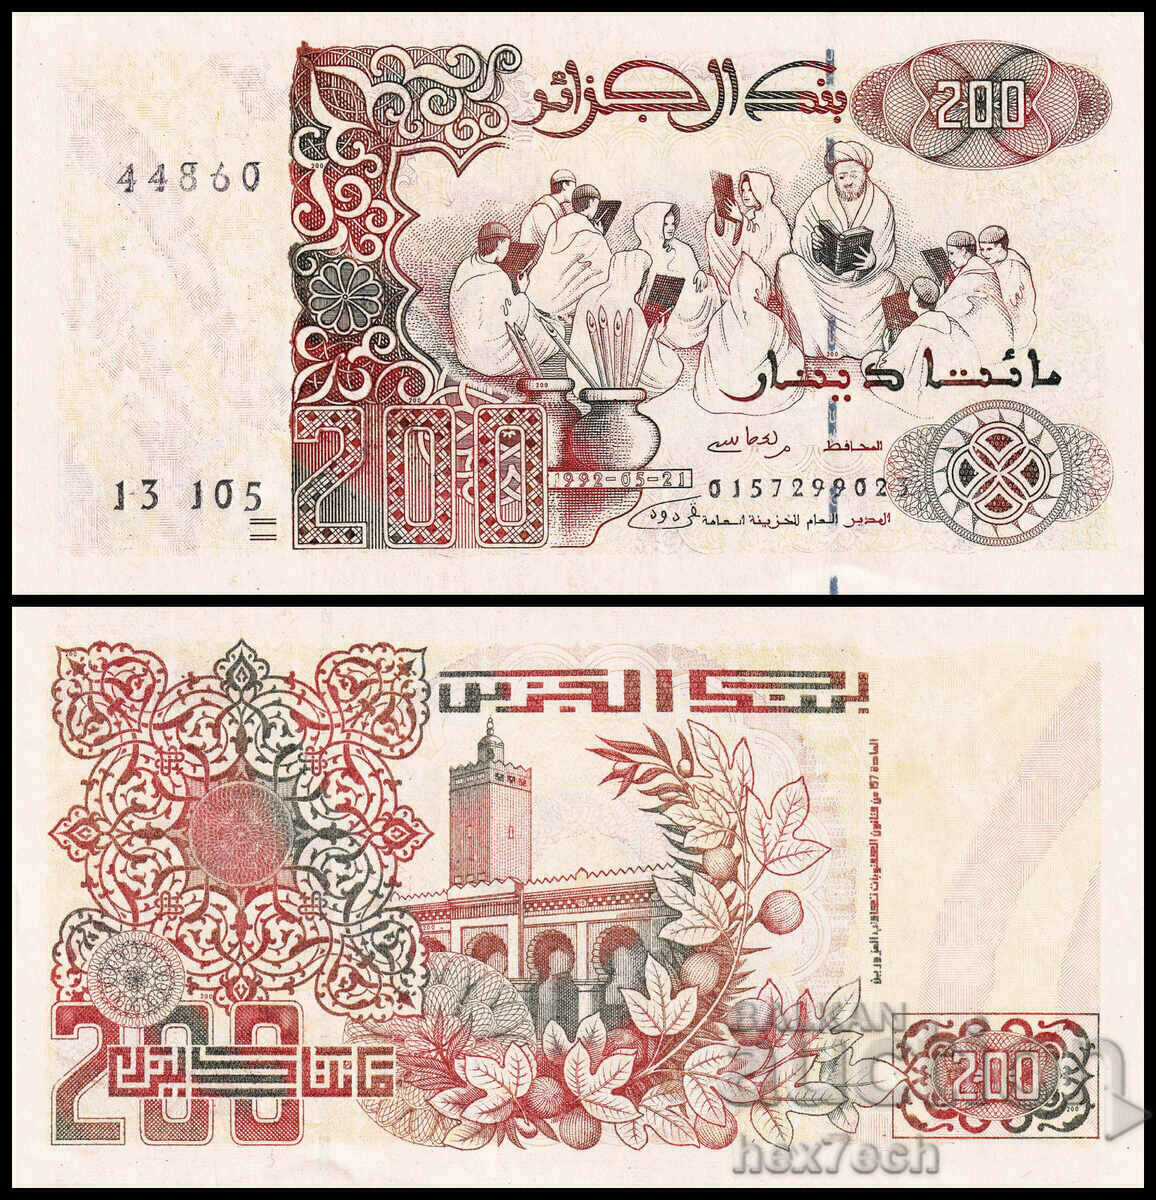 ❤️ ⭐ Algeria 1992 200 dinars UNC new ⭐ ❤️